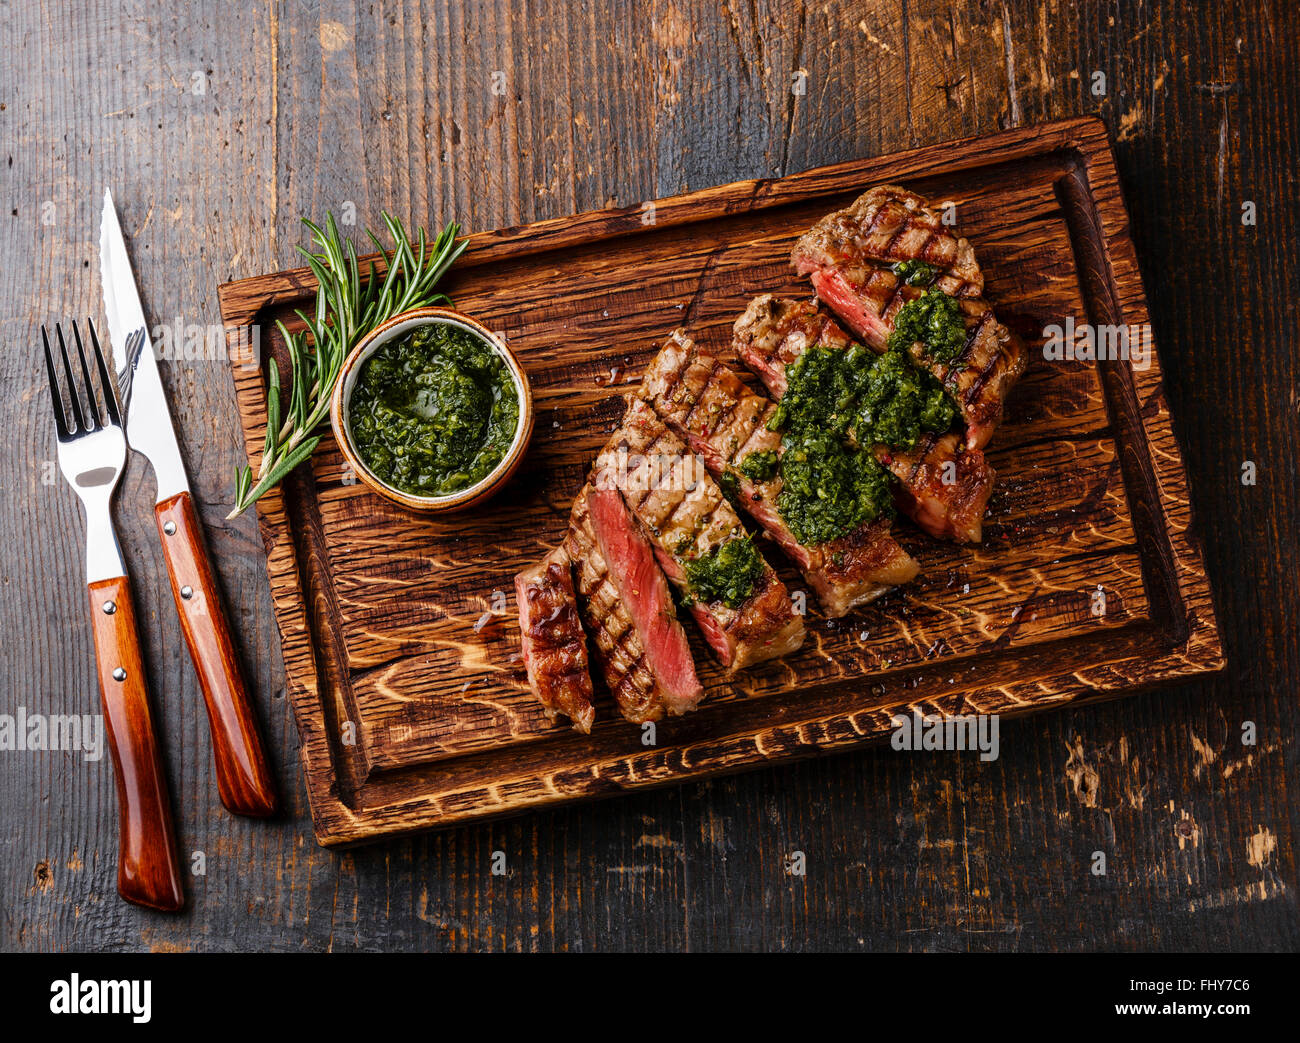 Meubles à point boeuf grillé steak de surlonge barbecue avec sauce Chimichurri sur une planche à découper sur fond sombre Banque D'Images